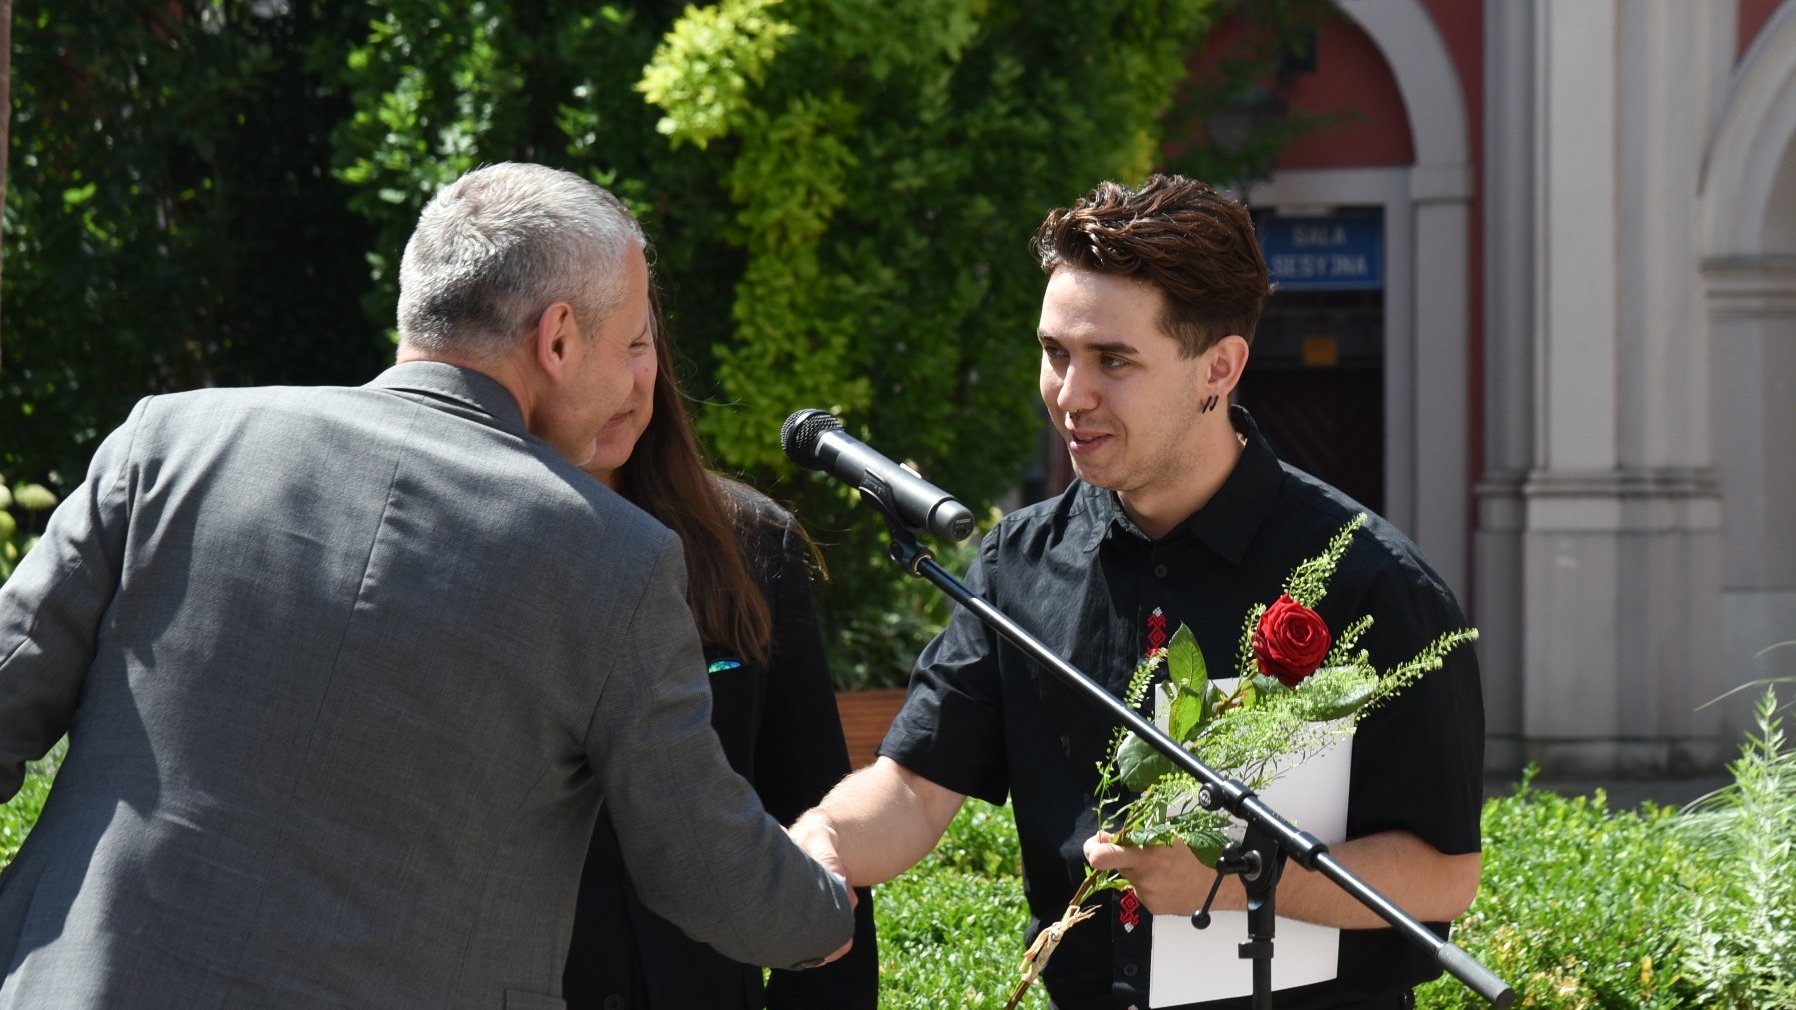 Na zdjęciu dwóch mężczyzn podających sobie ręce, jeden z nich trzyma różę